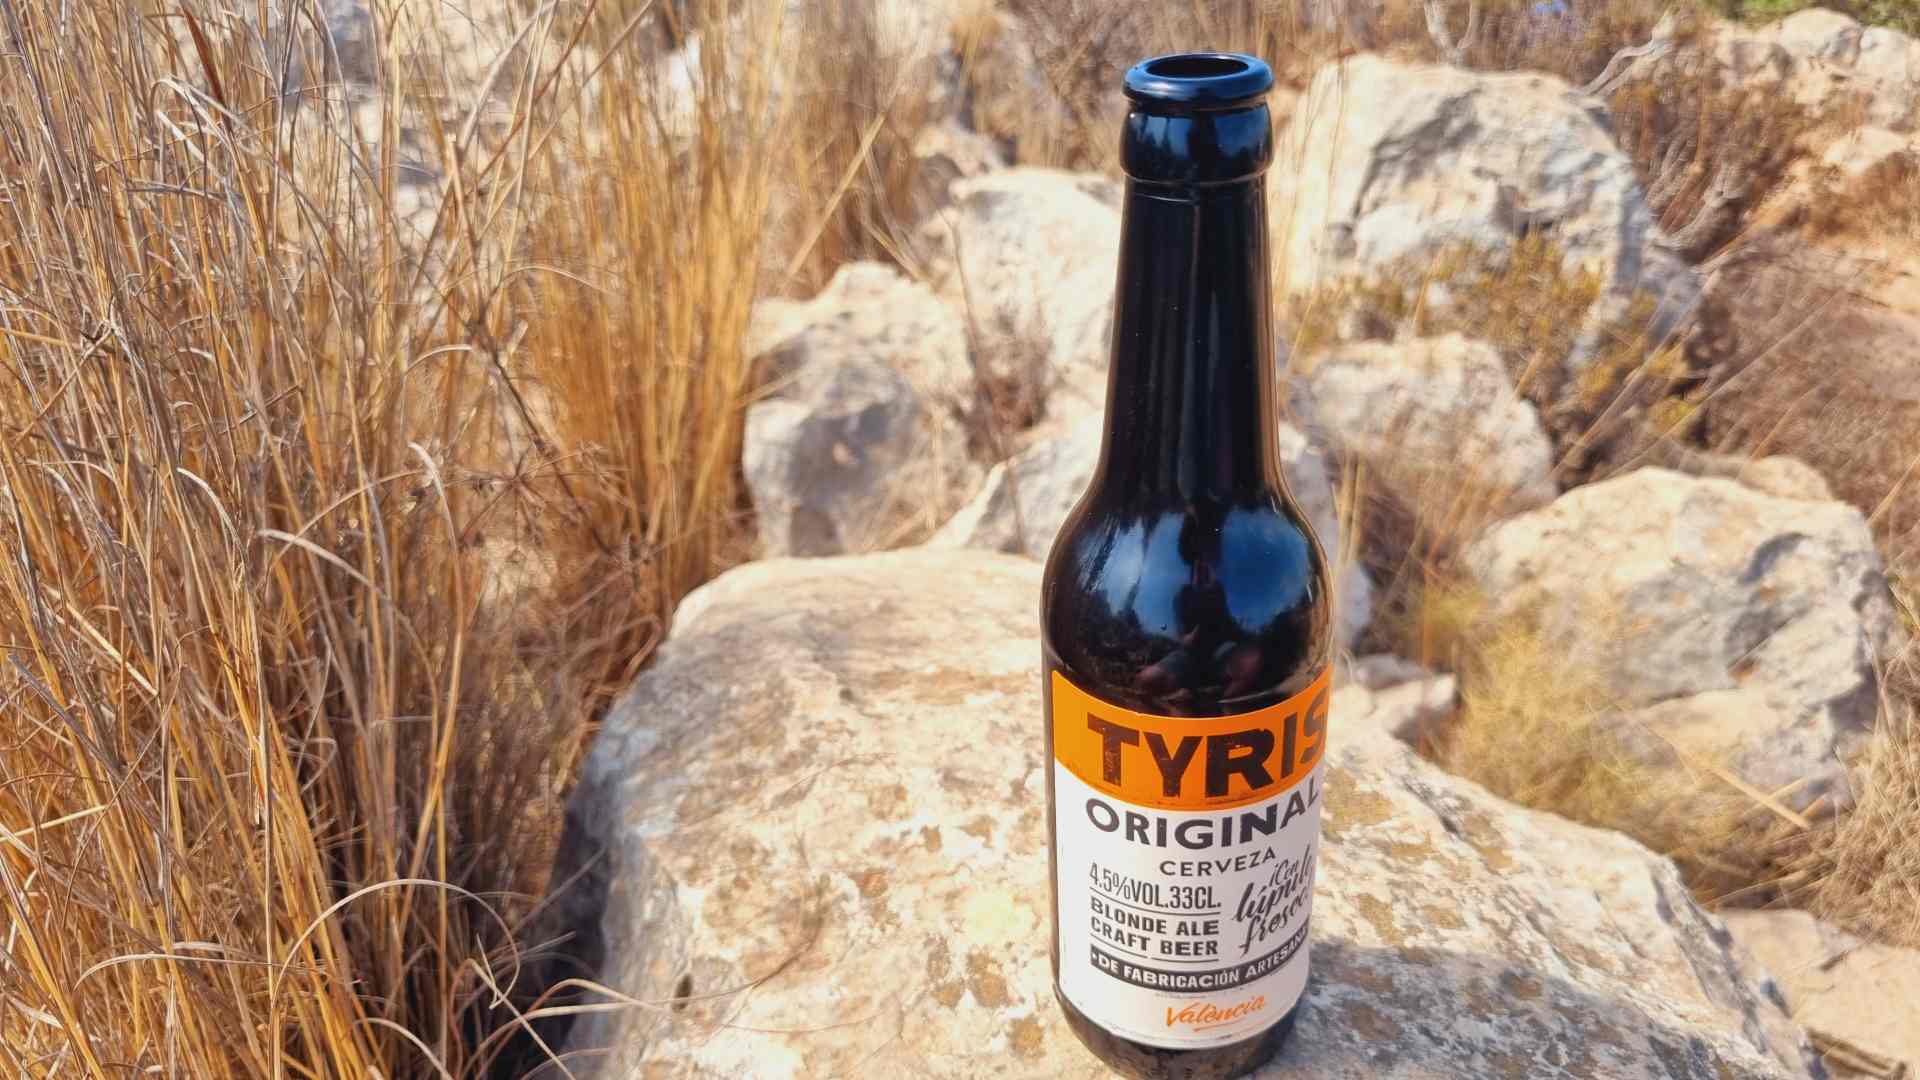 Tyris Original Bierwertung.de Bierwertung Biertest2